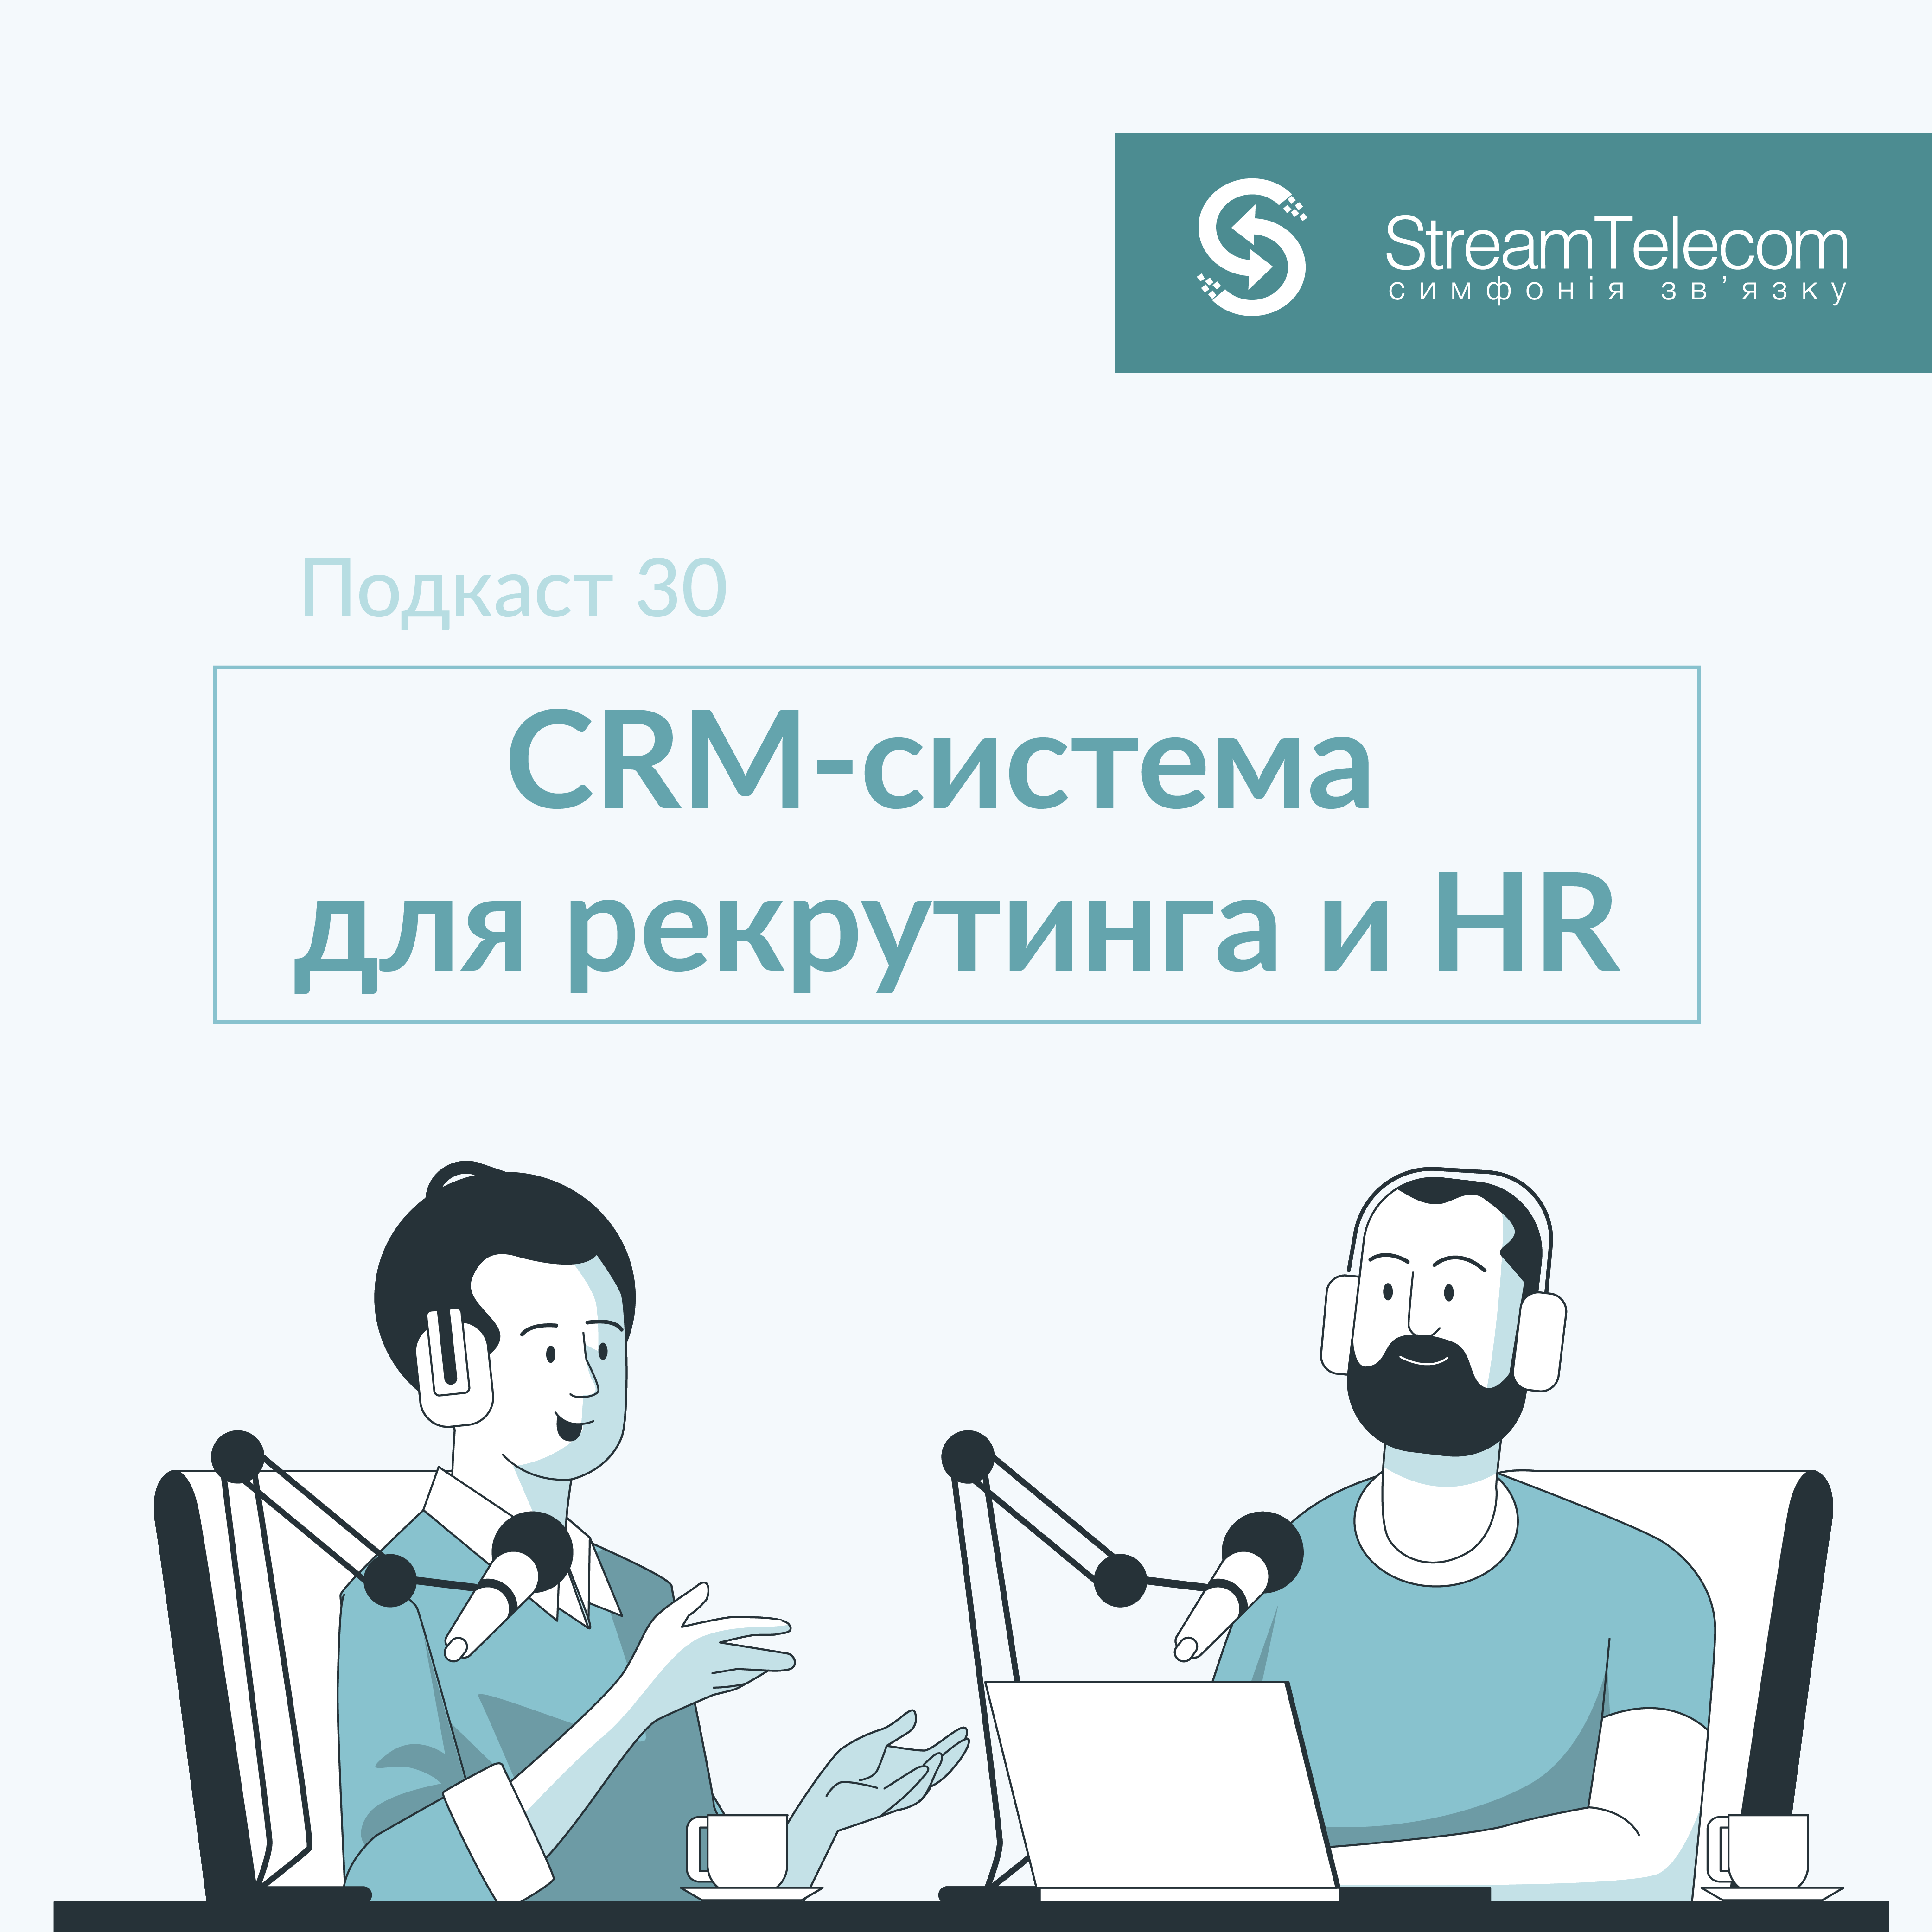 Как выбрать CRM-систему для рекрутинга и HR